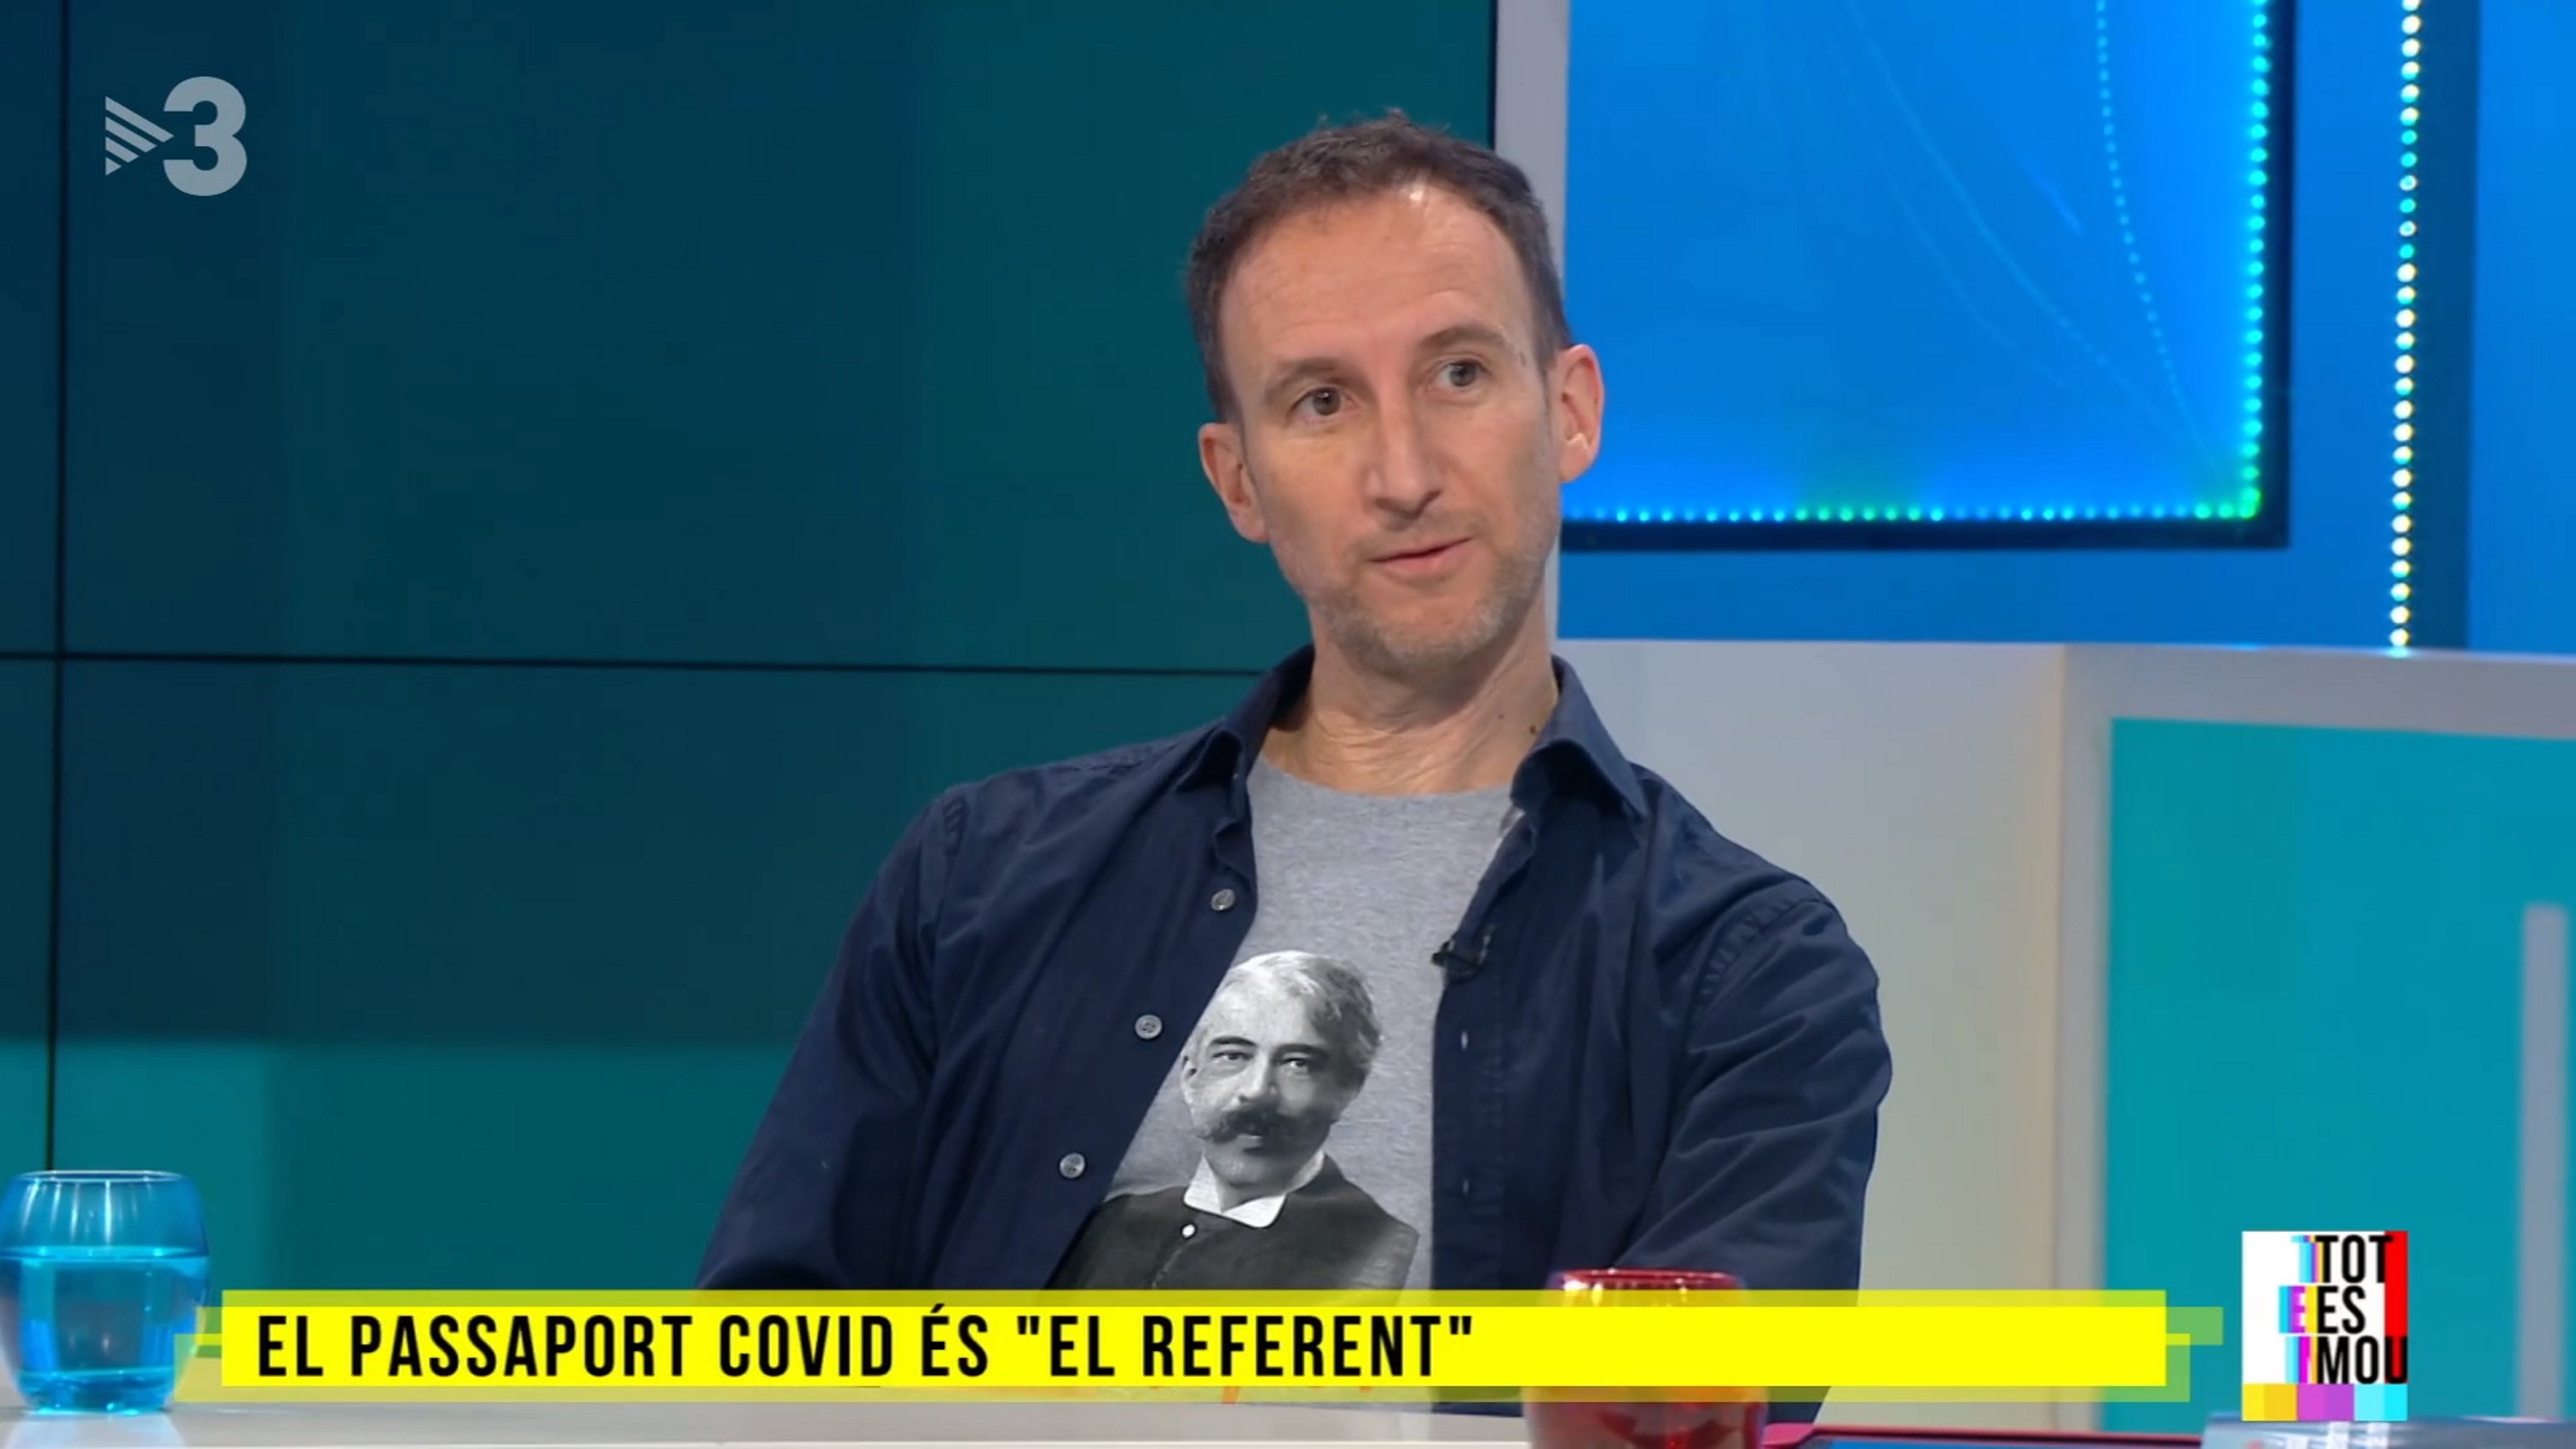 EXCLUSIVA| TV3 sustituye a Manel Alías en Moscú con una cara conocida de Deportes